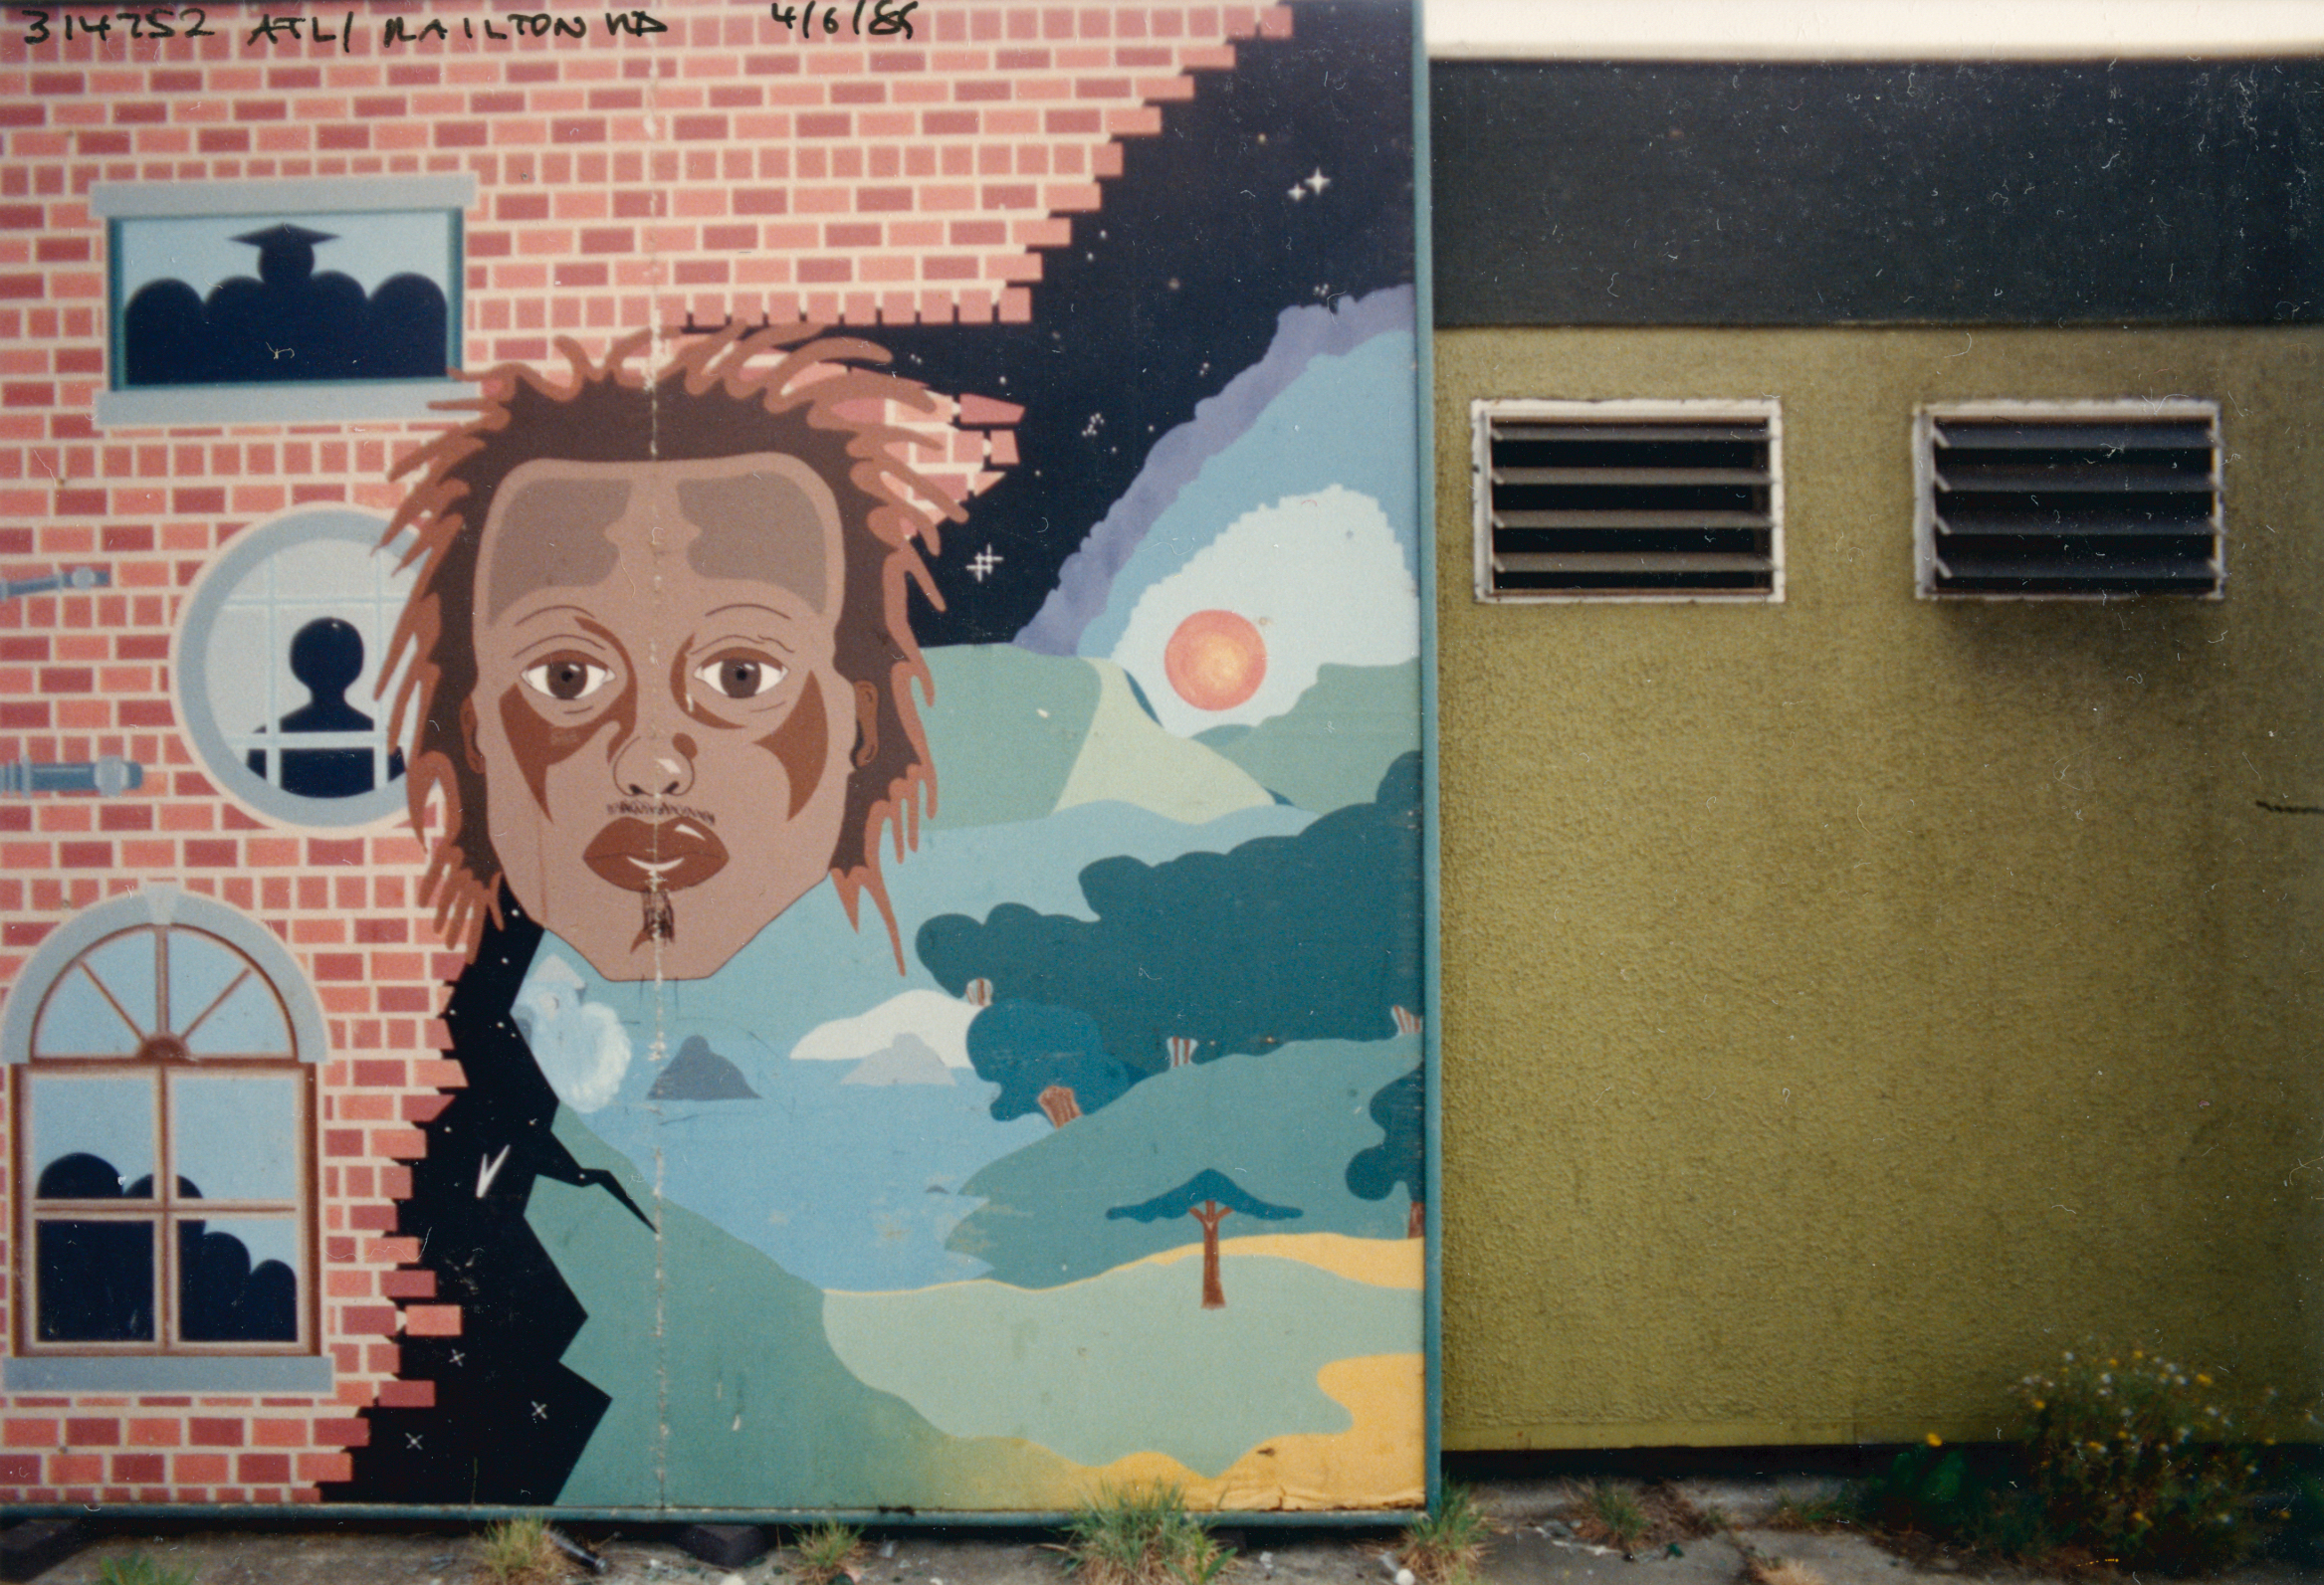 Mural, Railton Rd, Brixton, 1989, Lambeth